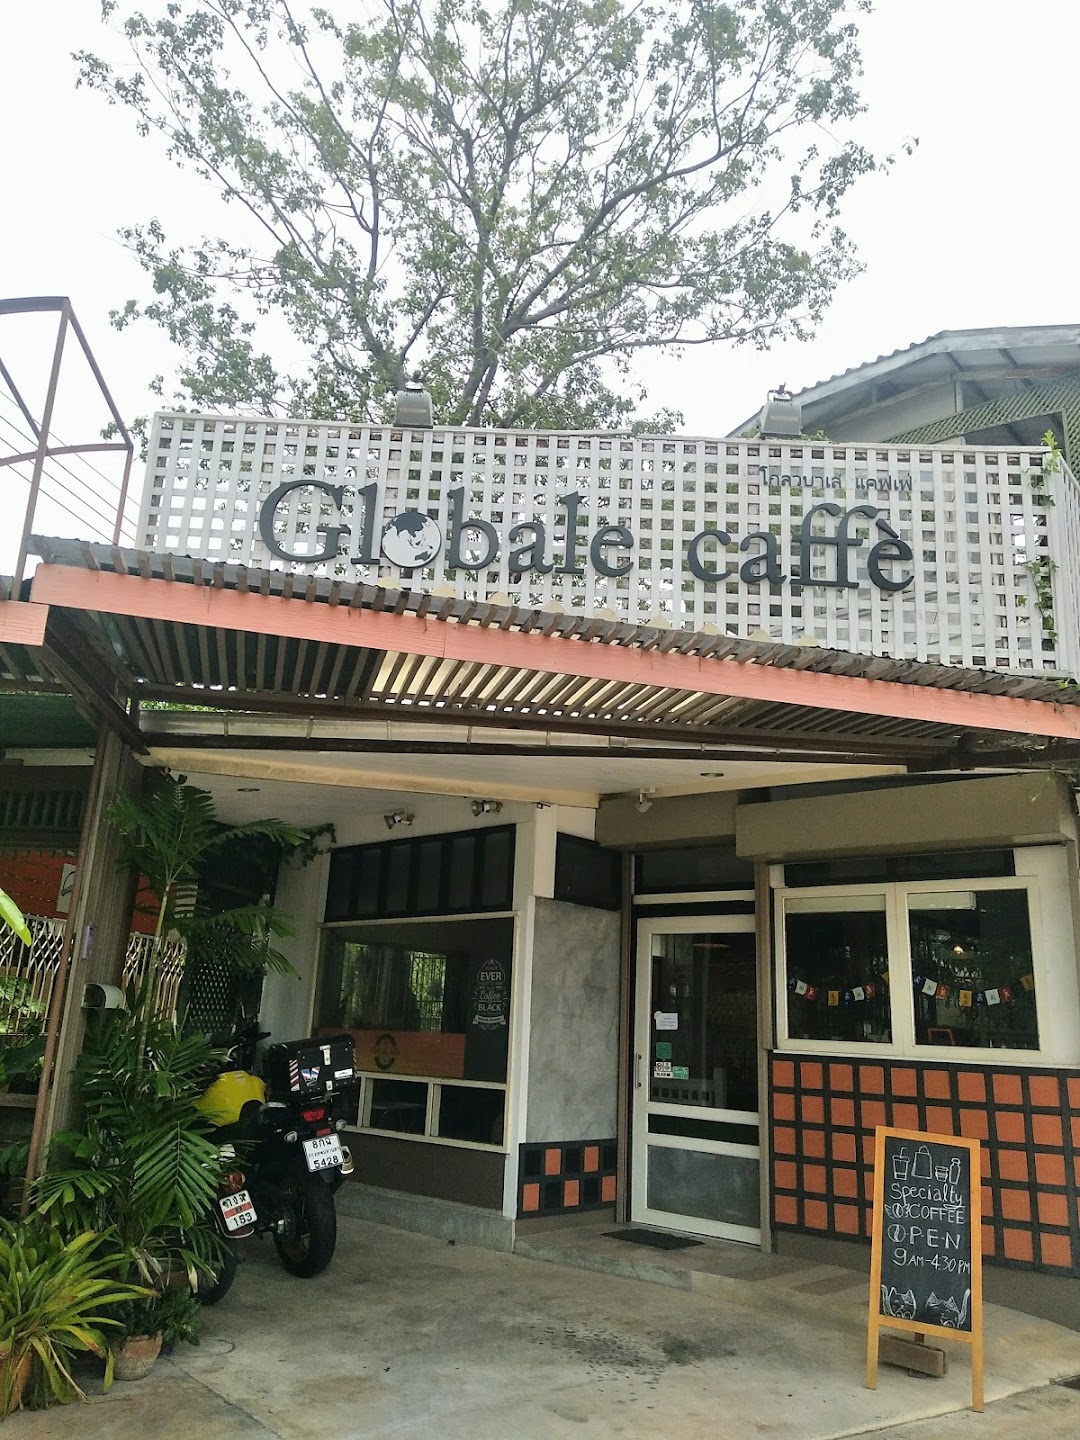 Globalecaffe